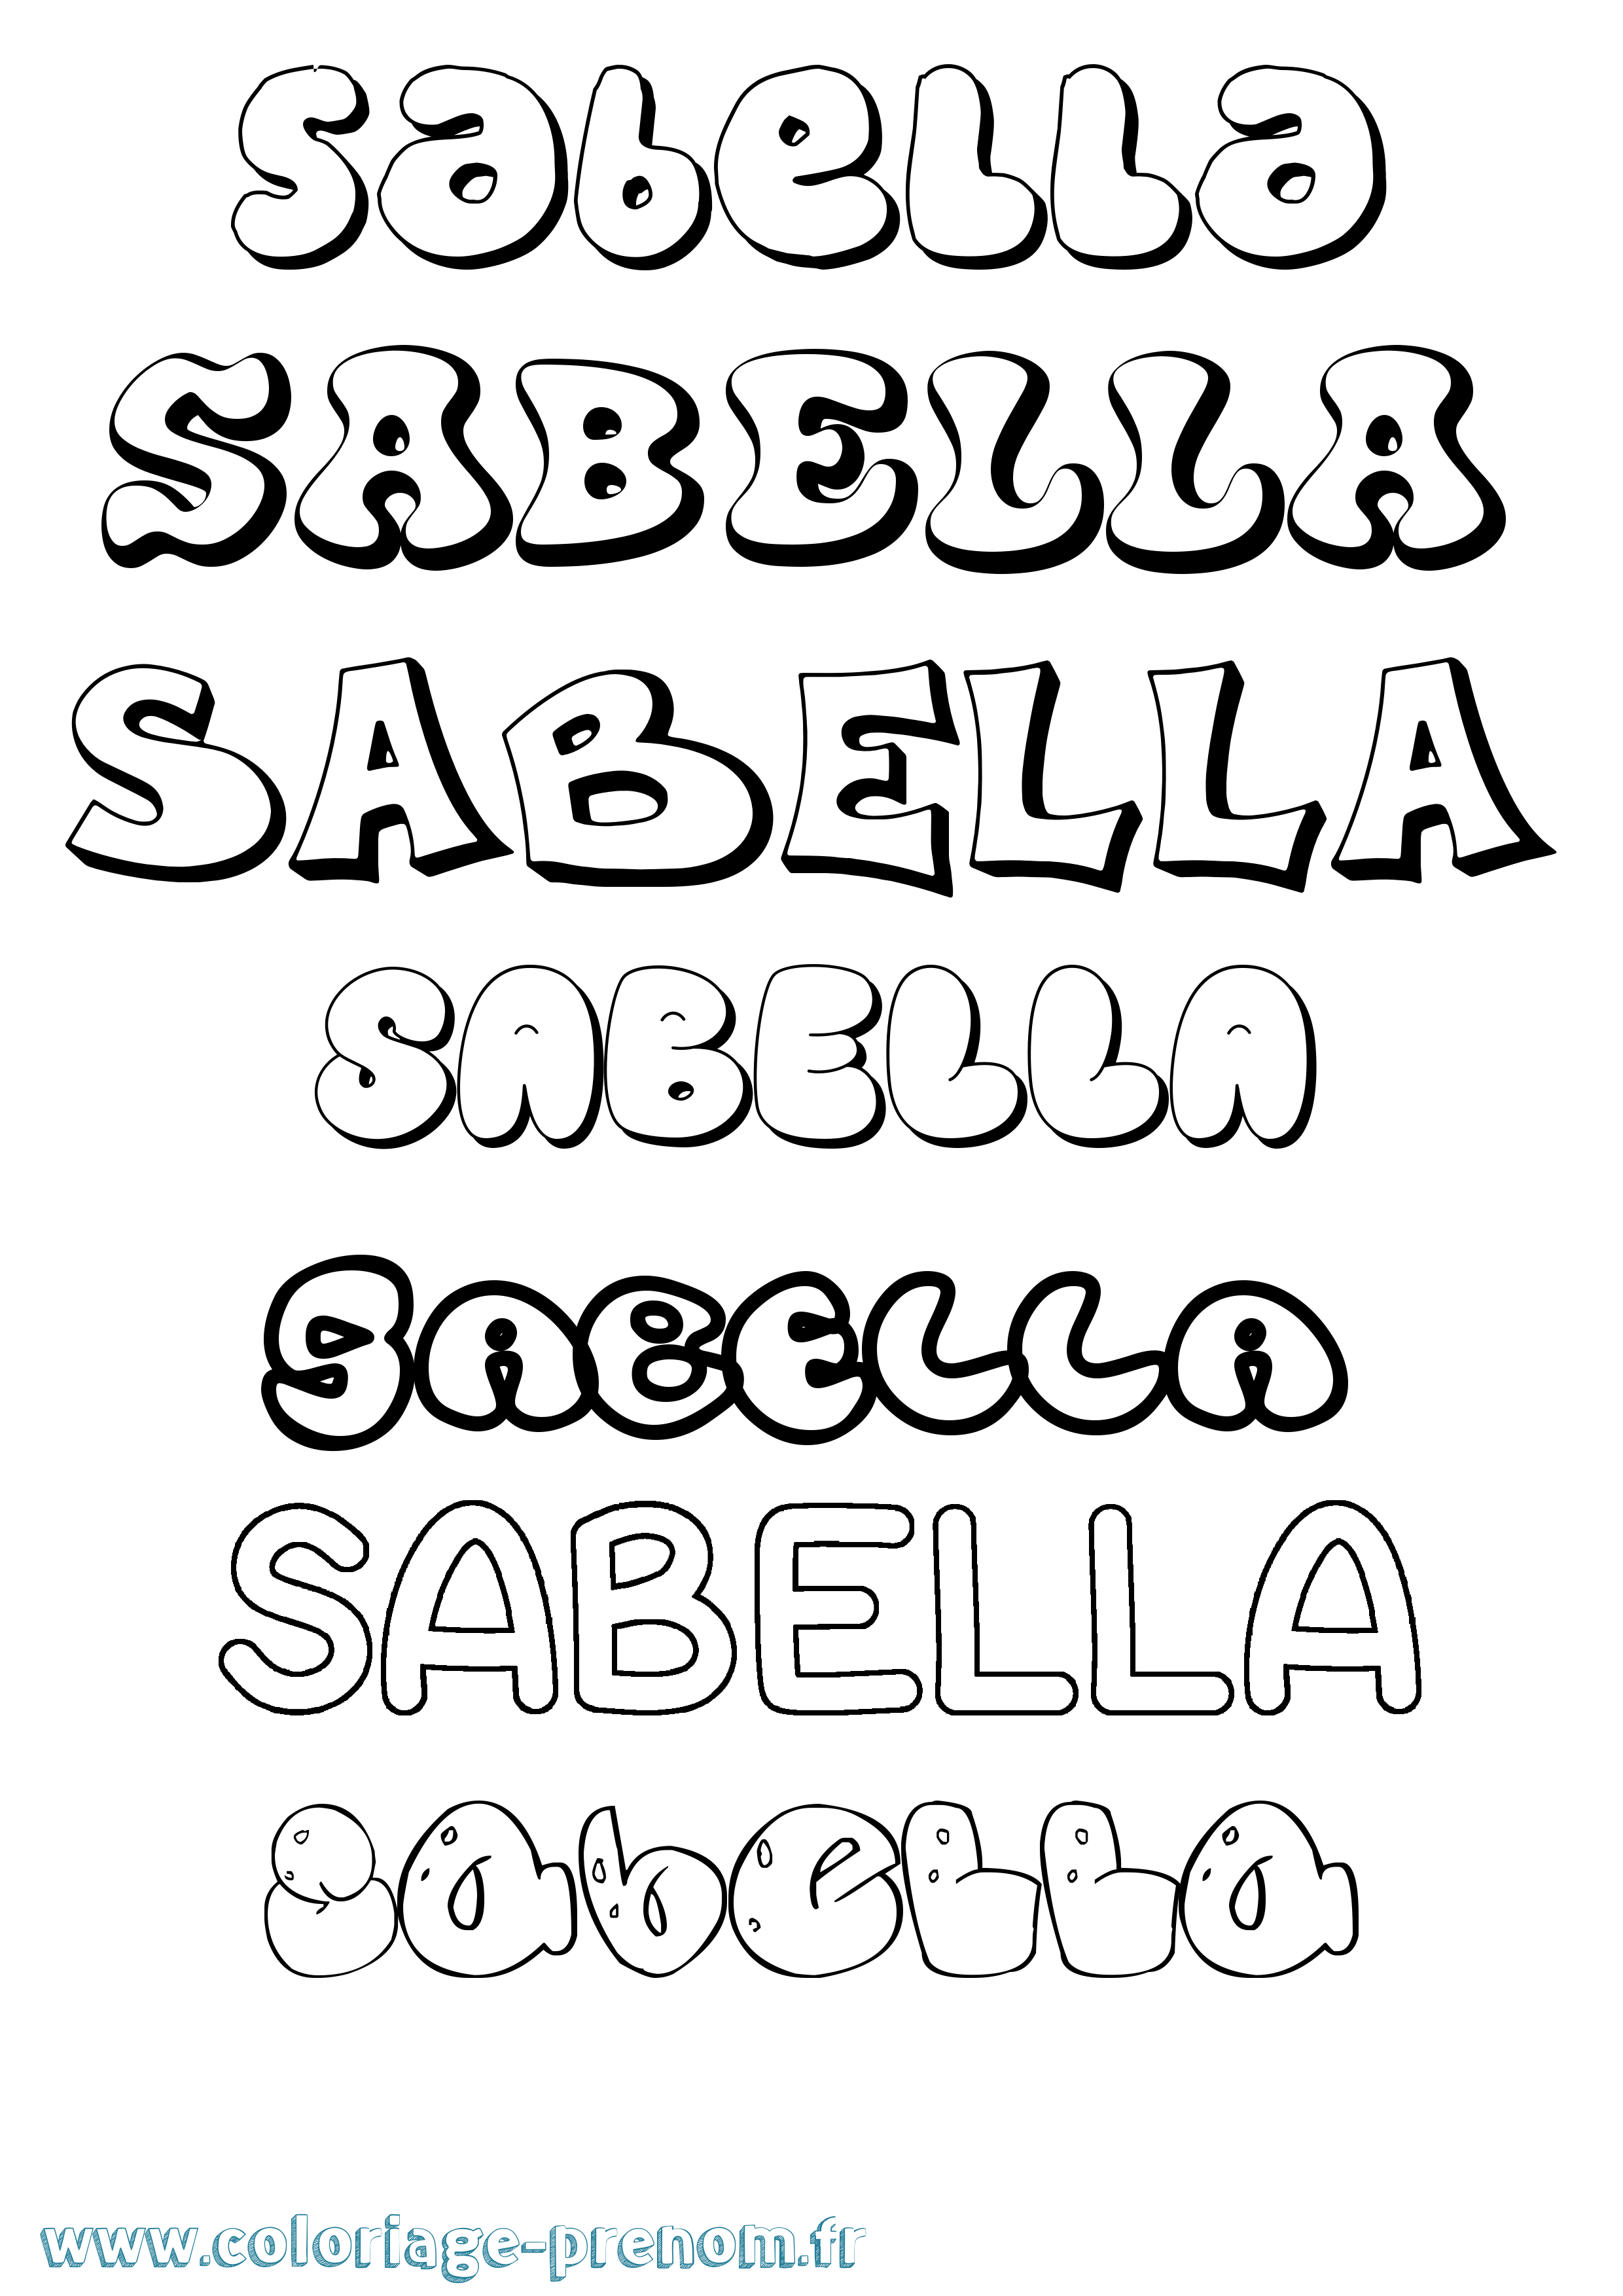 Coloriage prénom Sabella Bubble